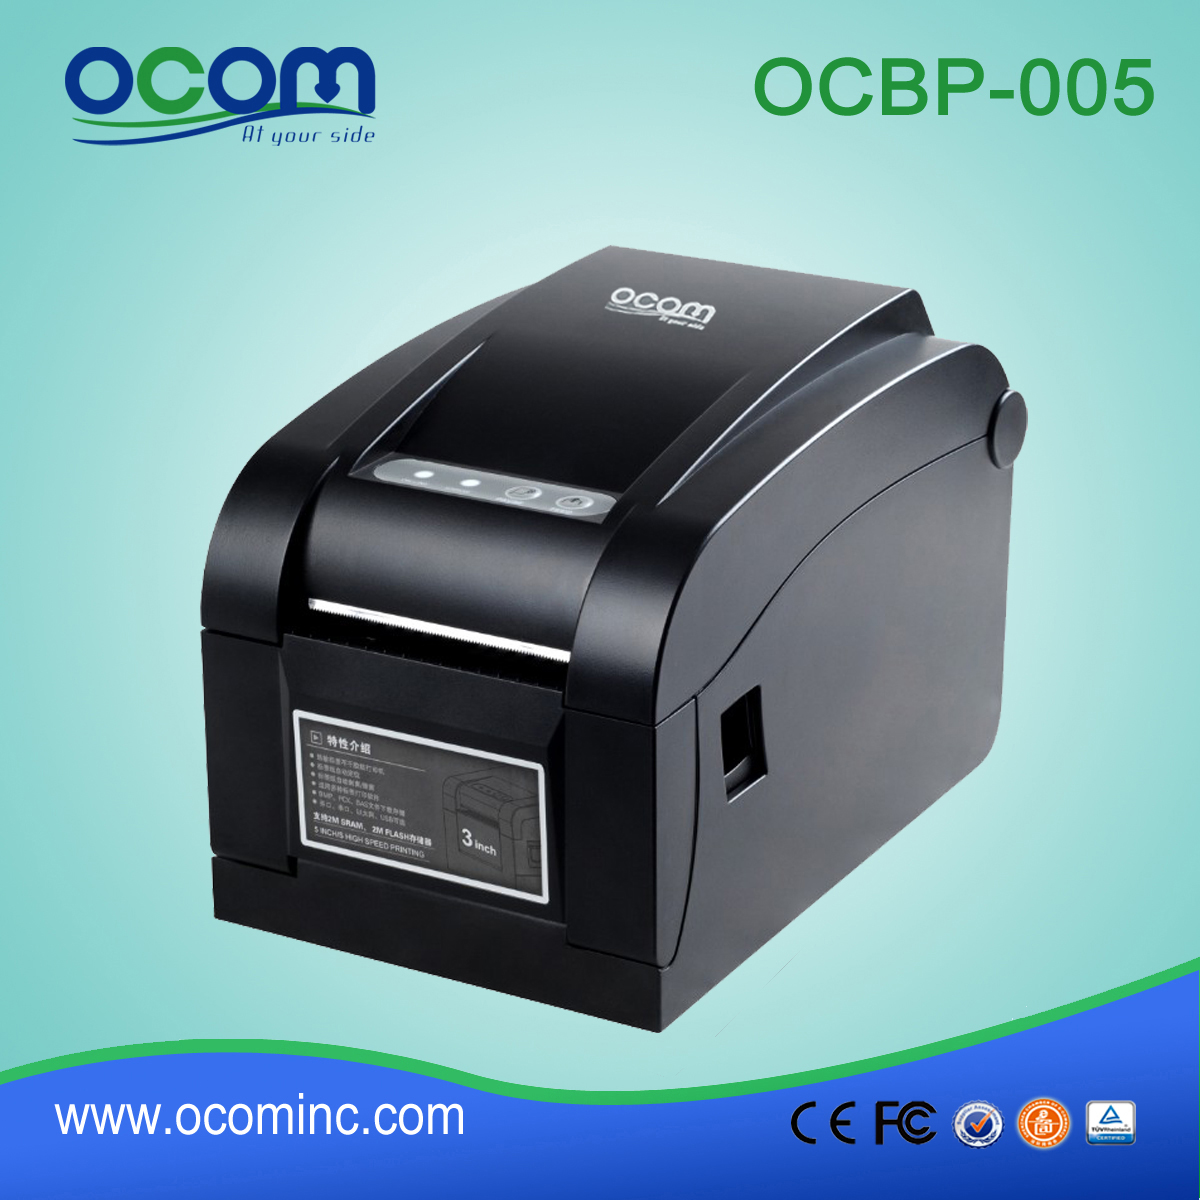 Серийный LAN портов штрих-код этикетки принтер Лучшая цена USB ОЦБФ-005